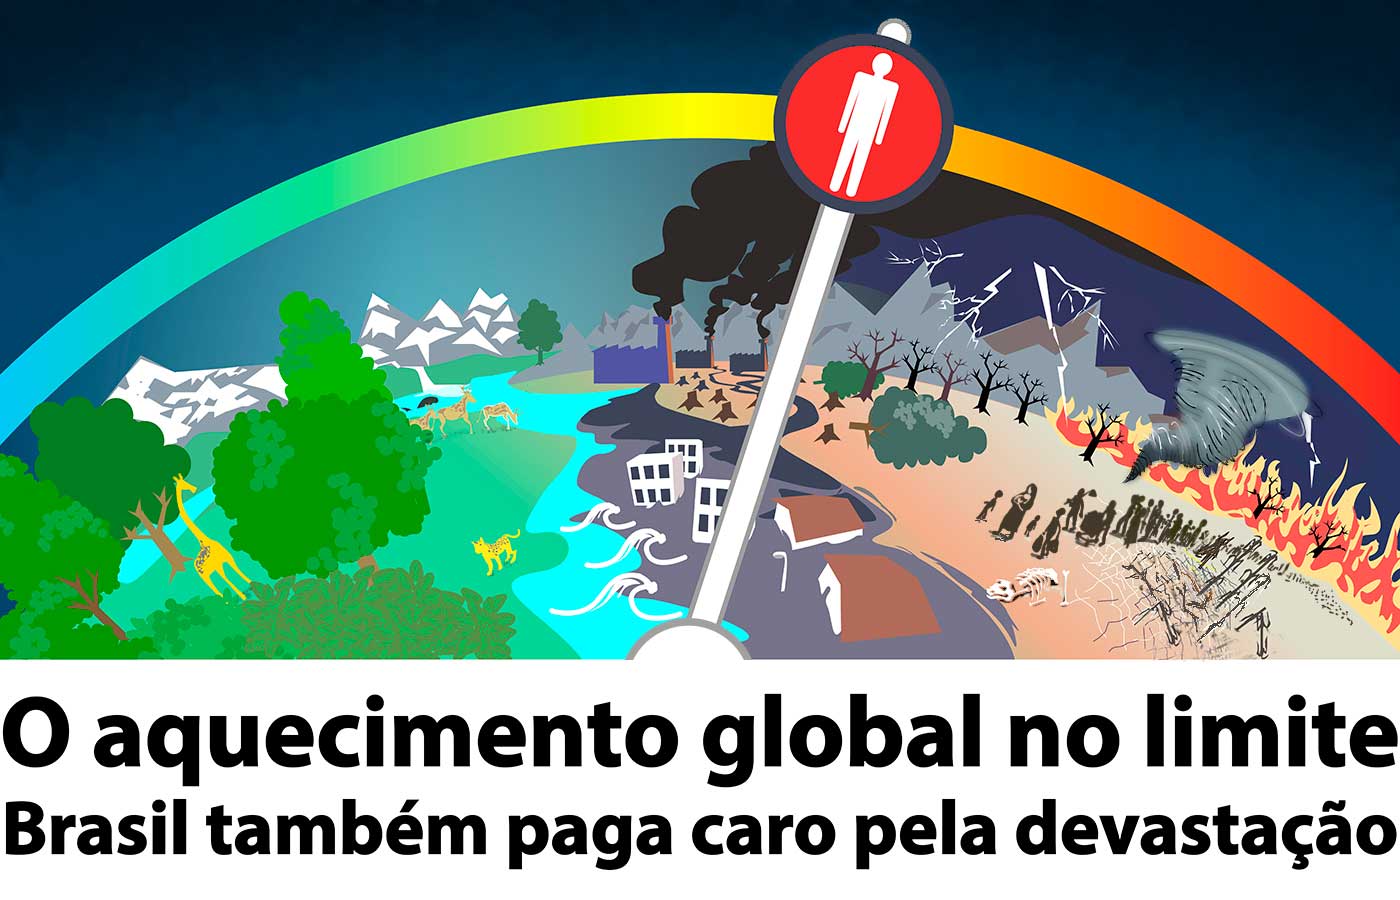 Transição energética é oportunidade para o Brasil exercer liderança global  - Jornal O Globo